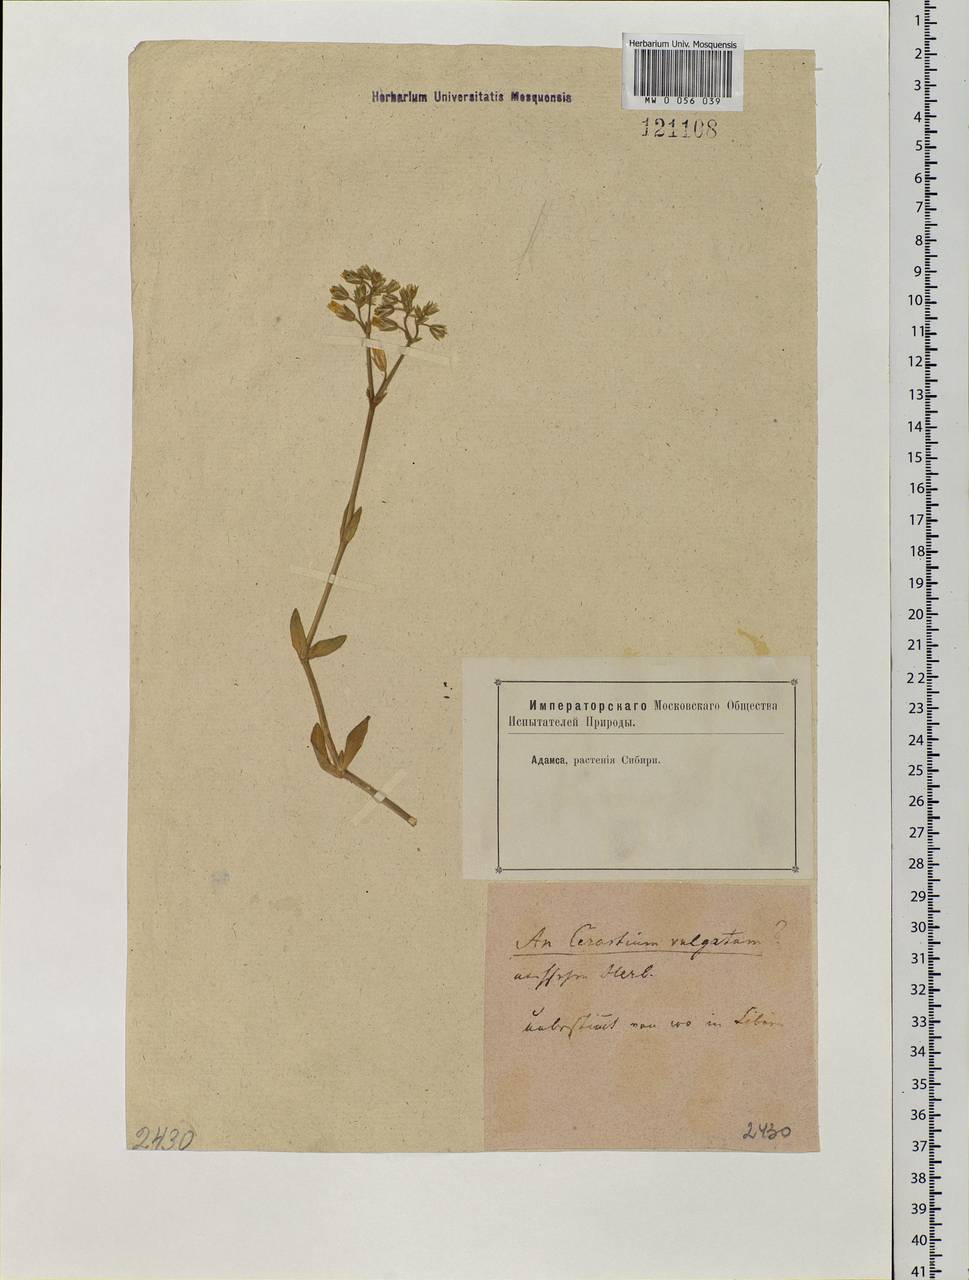 Cerastium holosteoides Fr., Siberia (no precise locality) (S0) (Russia)